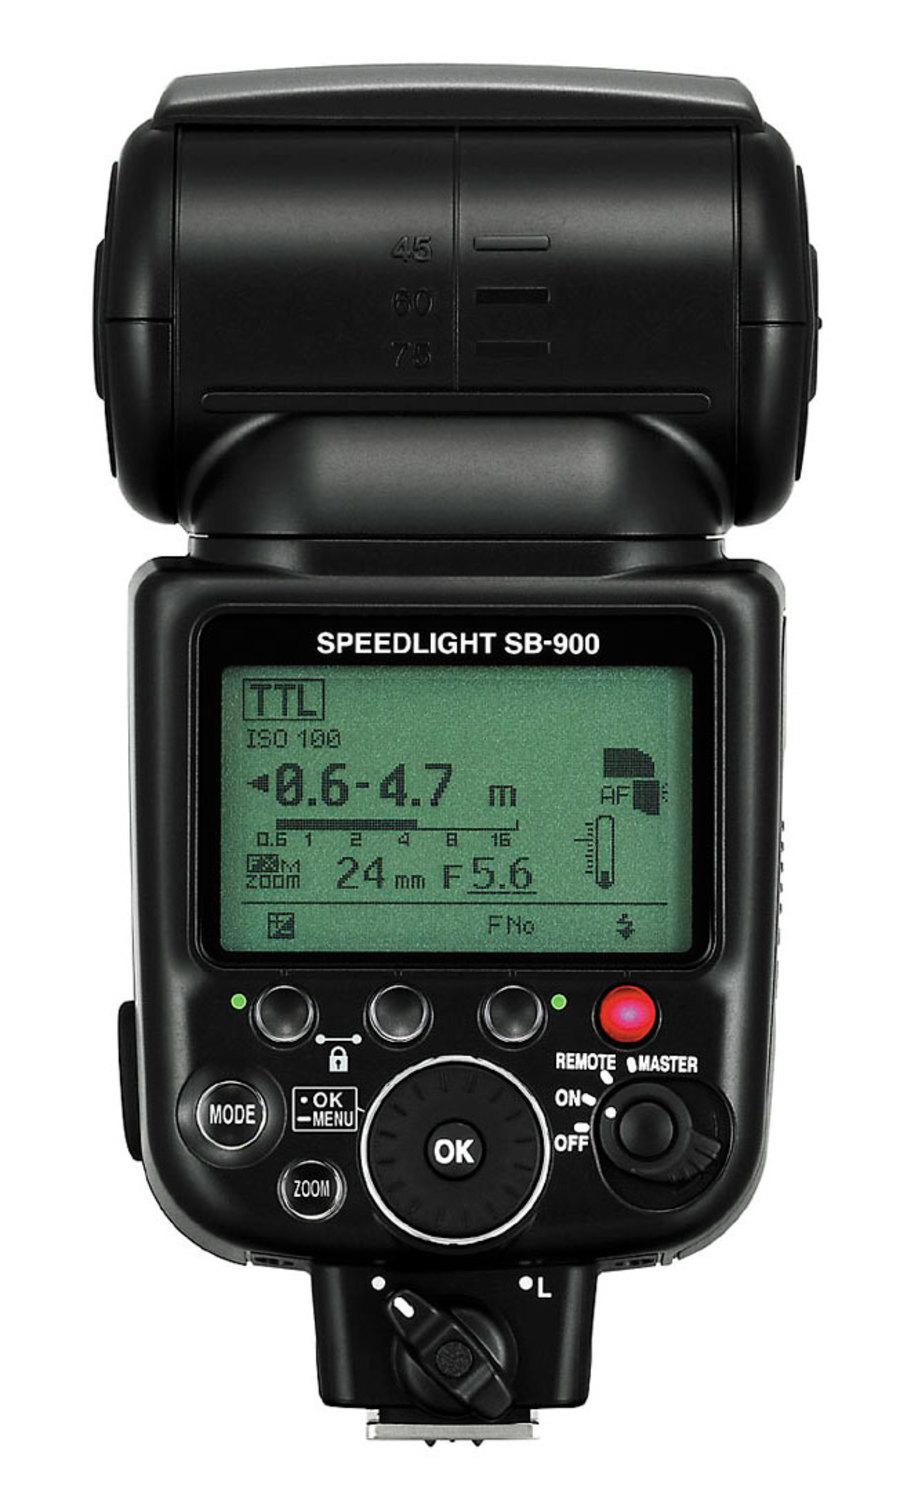 Вспышка Nikon Speedlight SB-900. Цены, отзывы, фотографии, видео